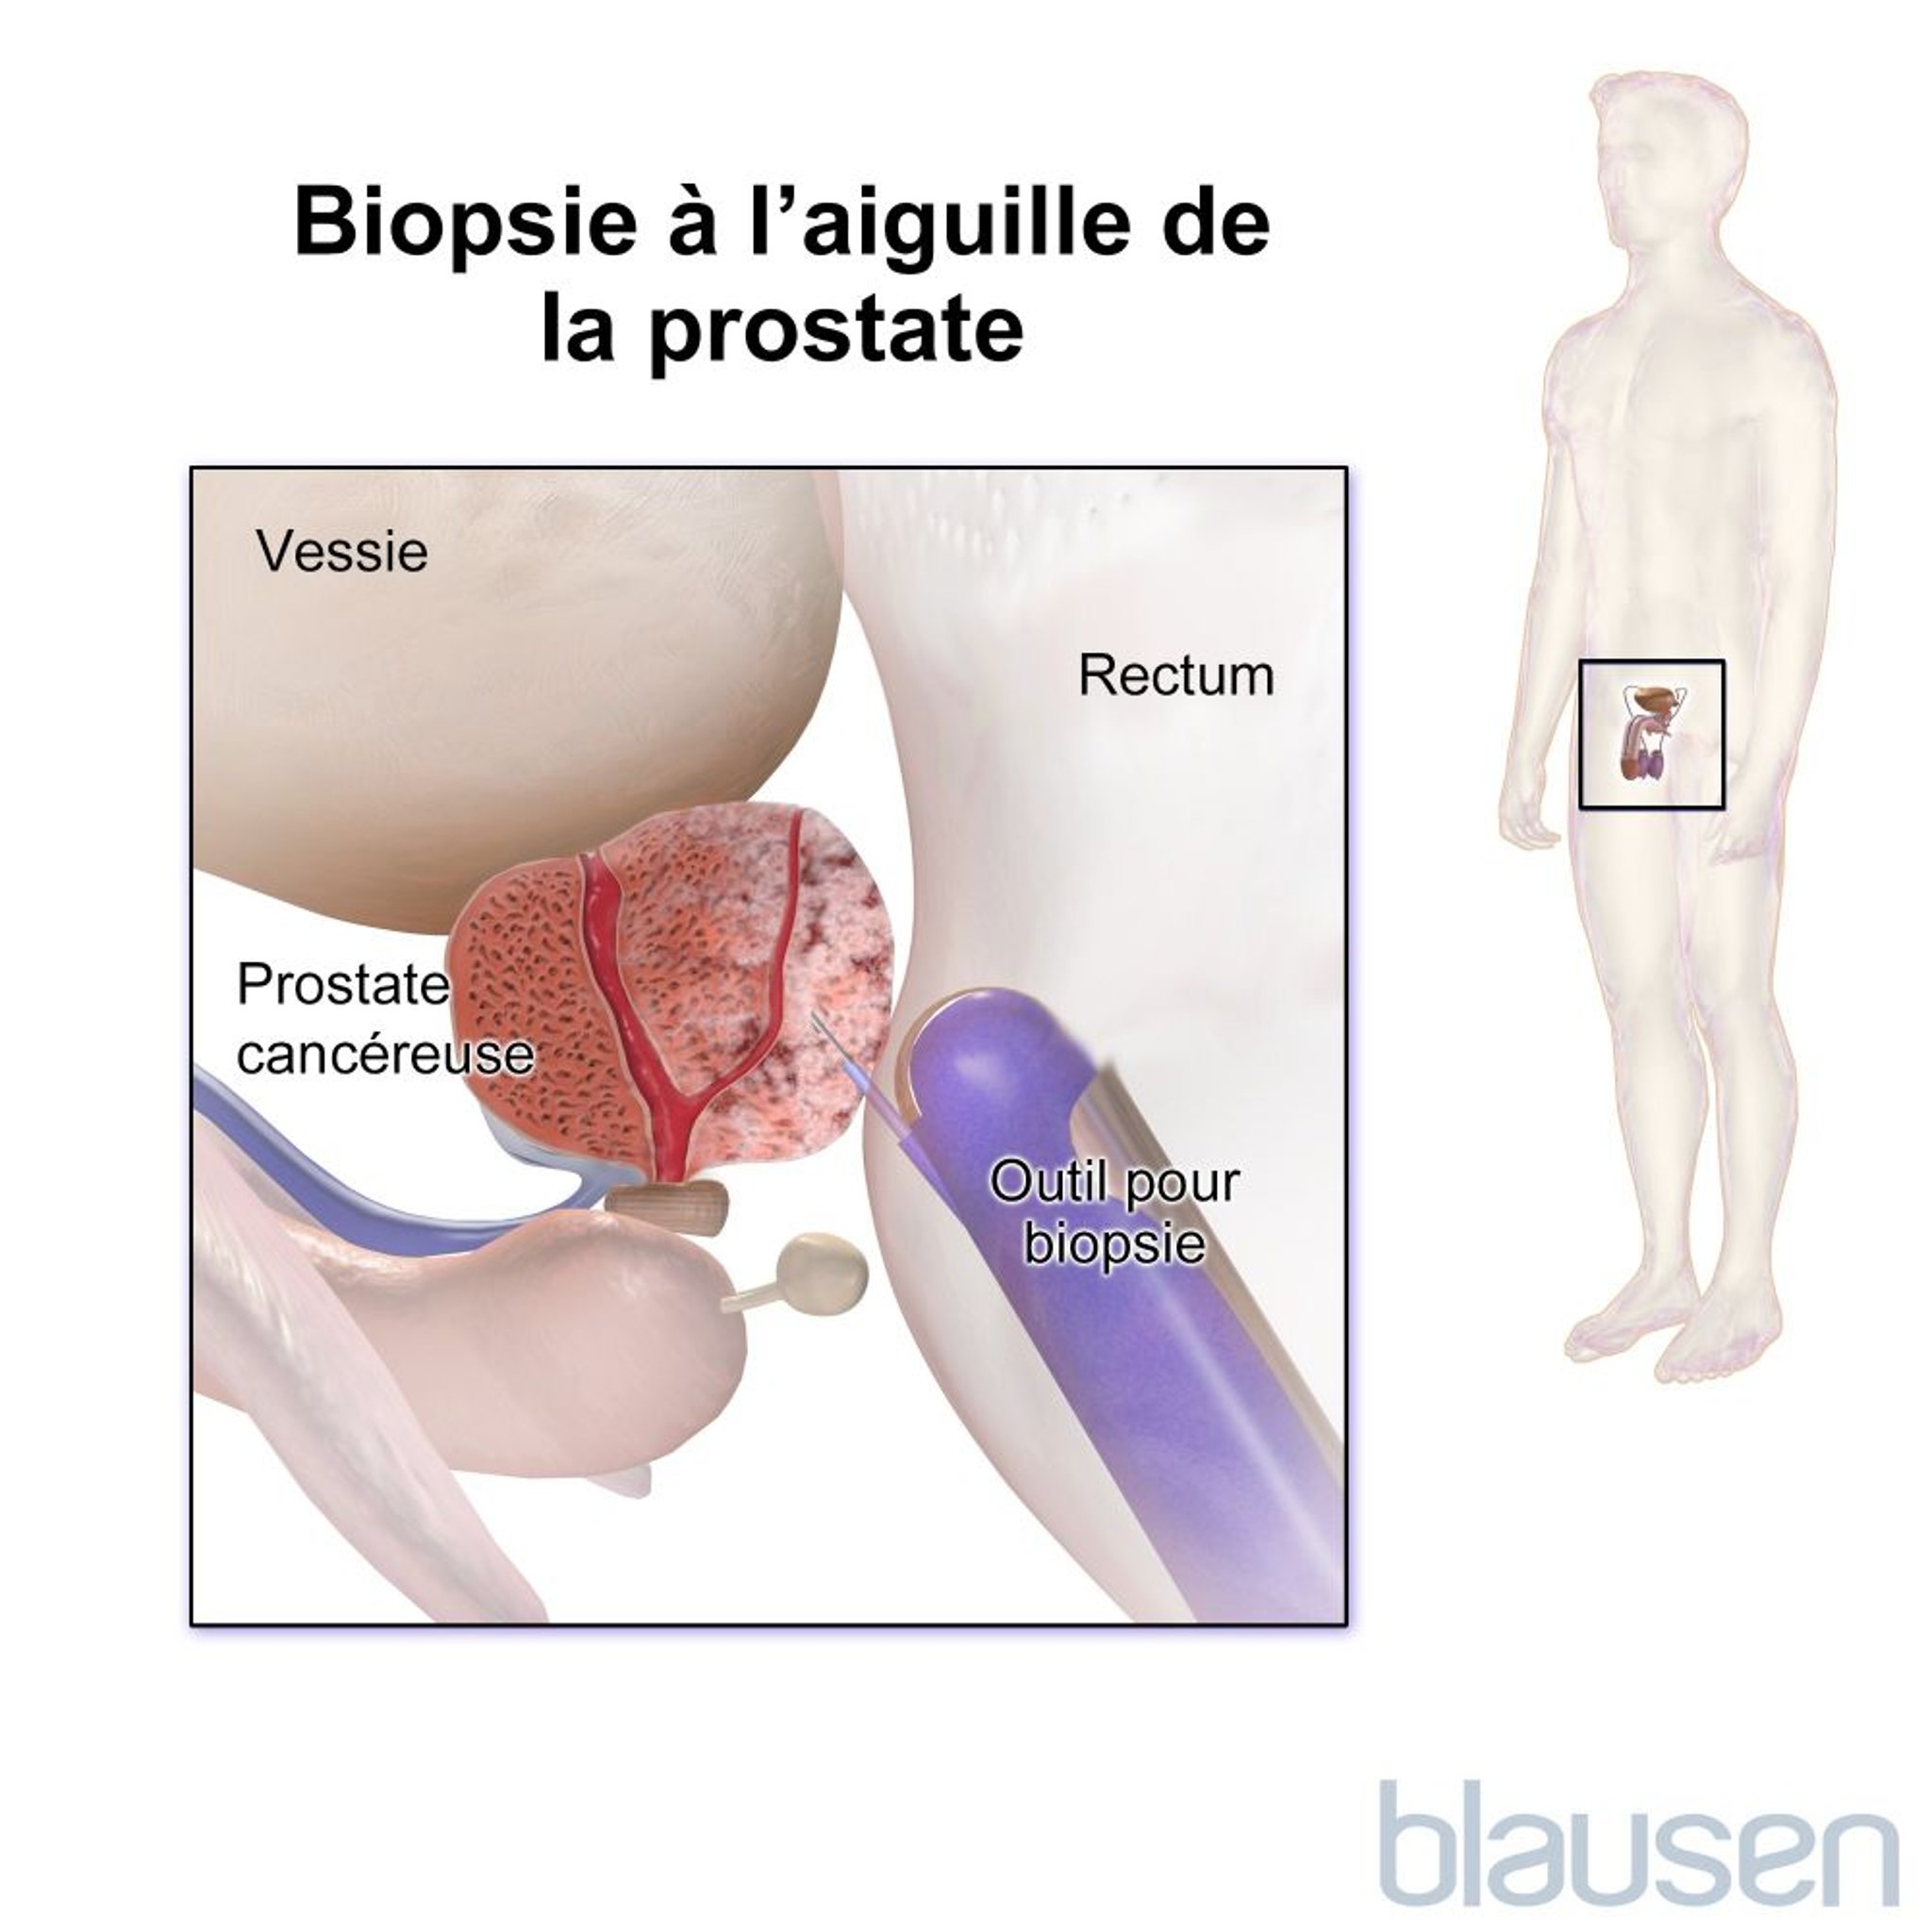 Biopsie de la prostate à l’aiguille (transrectale)